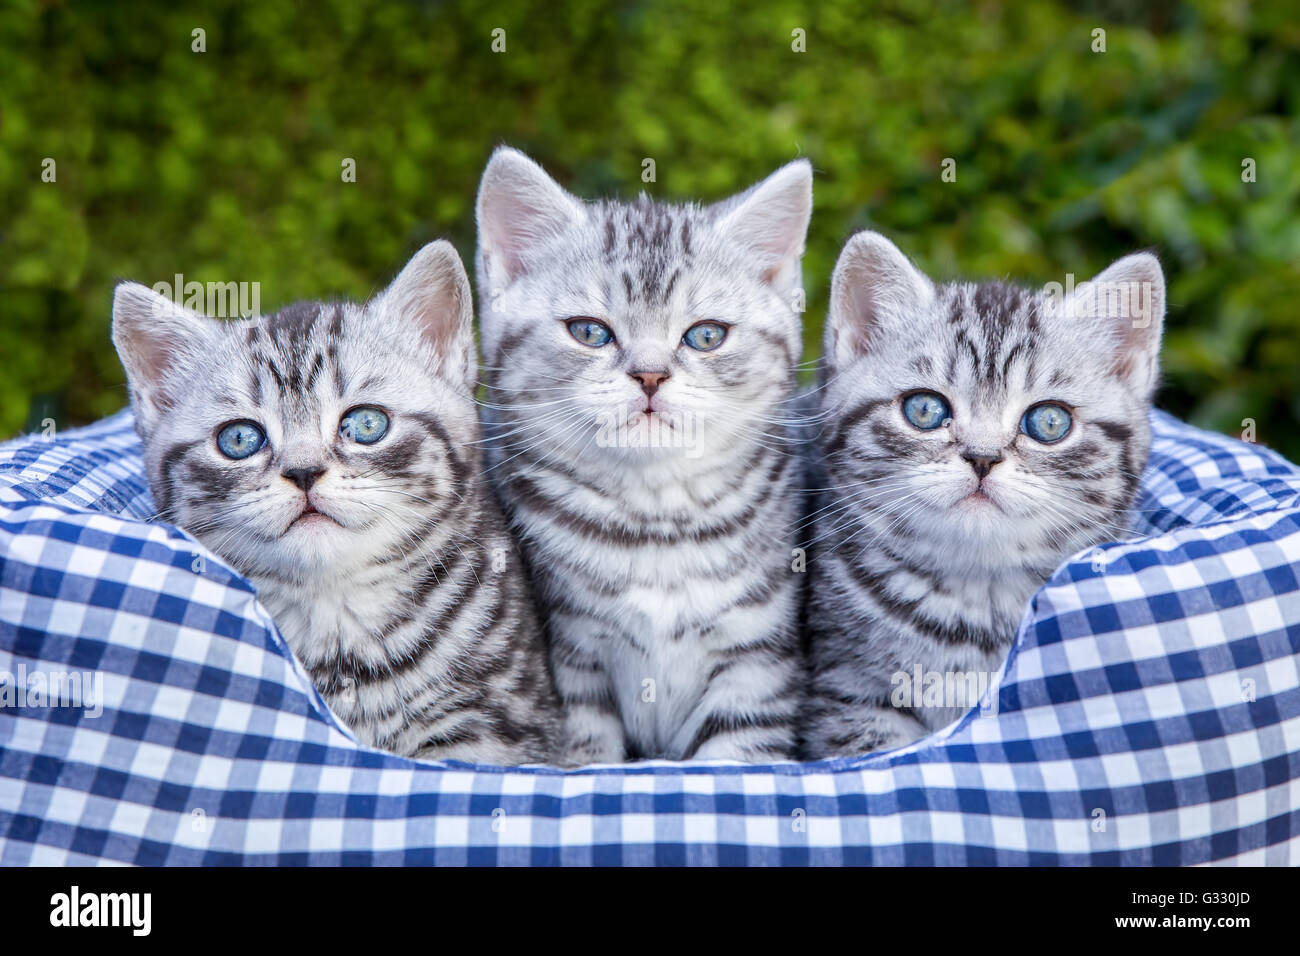 Tre giovani british capelli corti nero silver tabby spotted gattini seduta nel cestello a scacchi Foto Stock